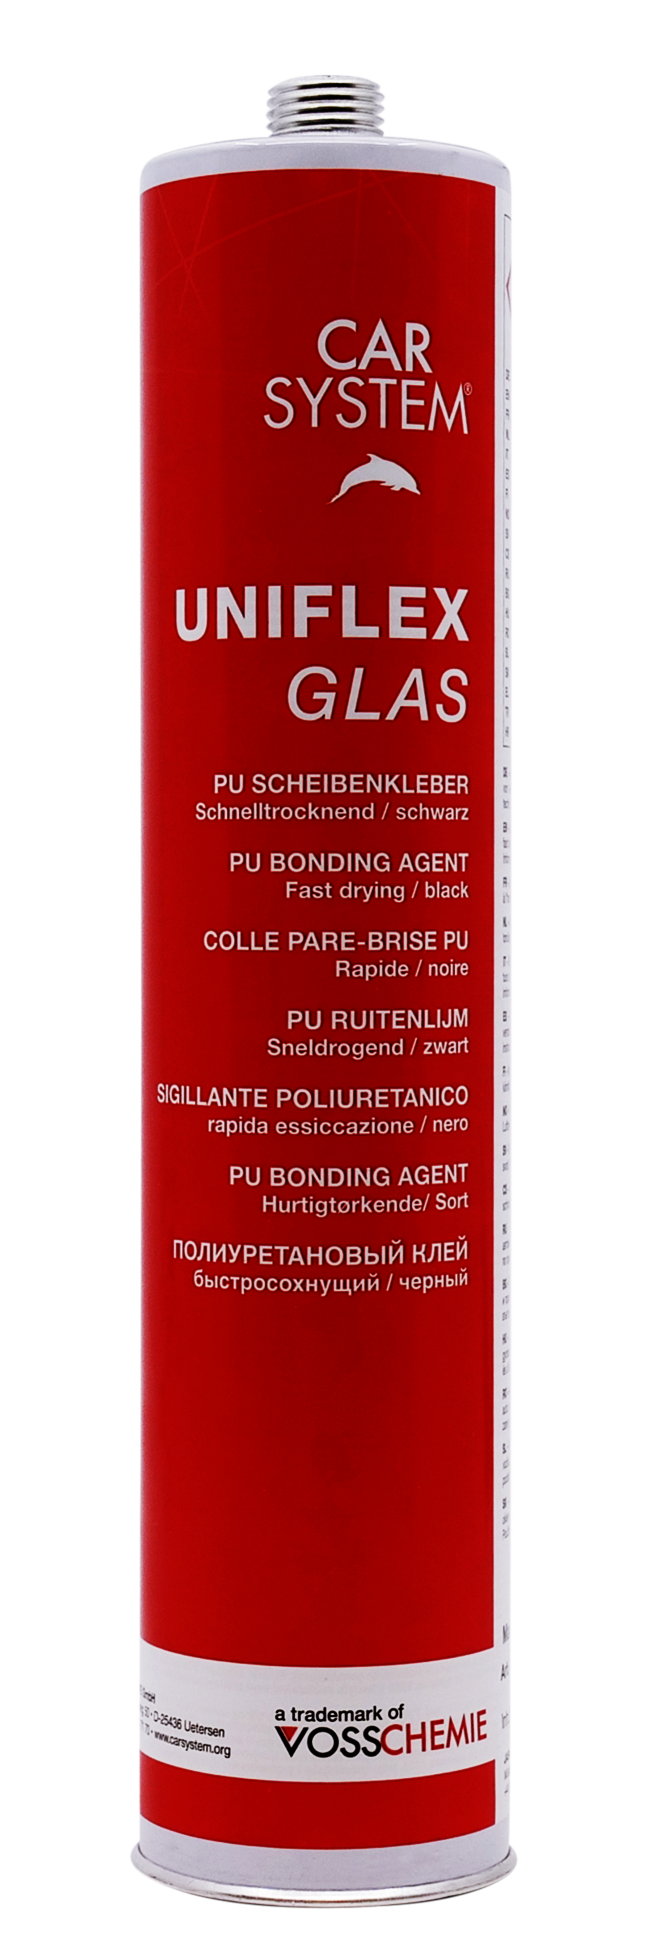 UNIFLEX Glas Scheibenkleber - CARSYSTEM